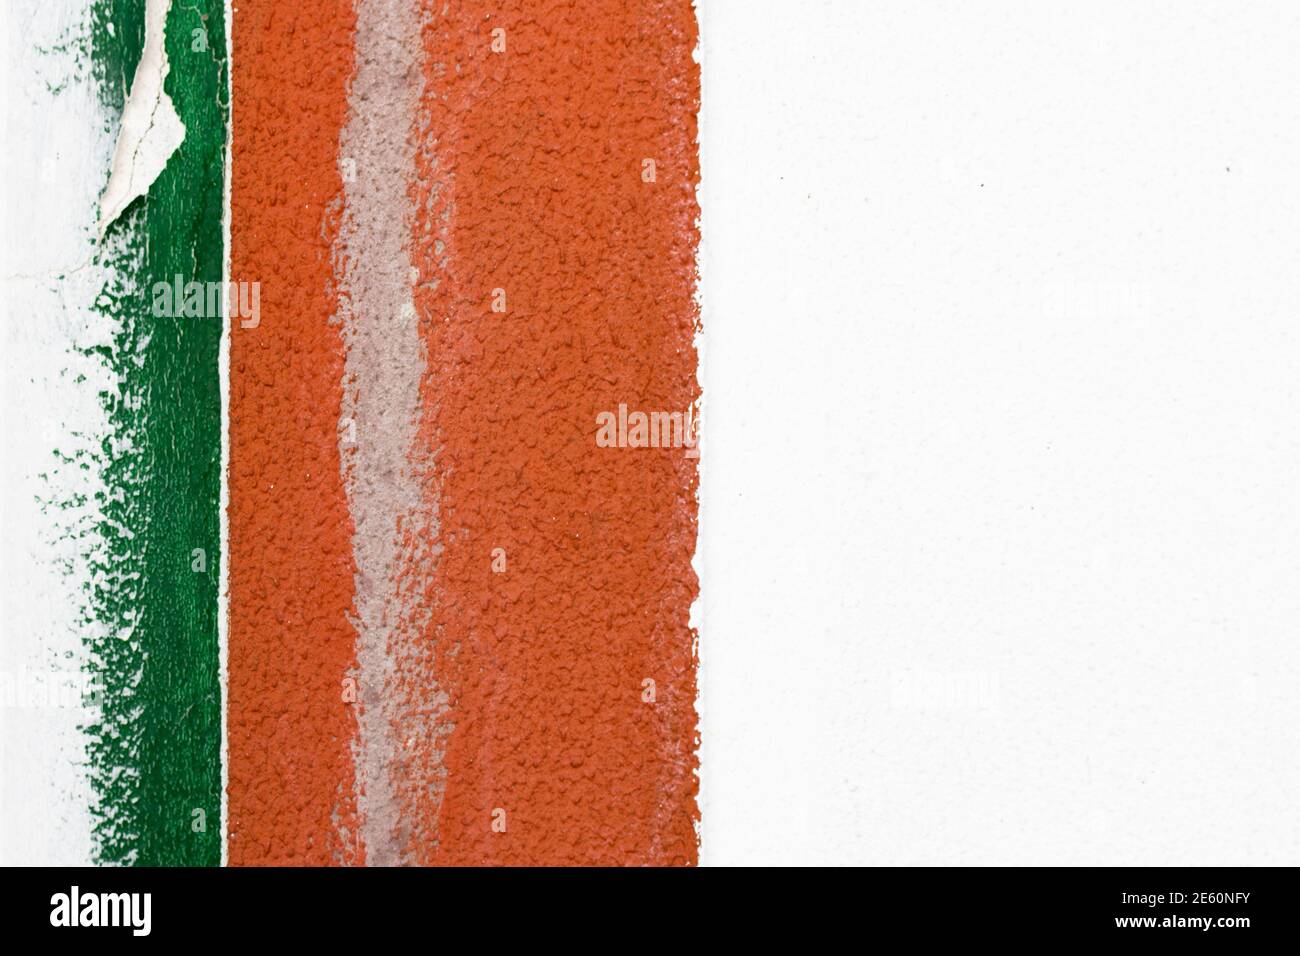 Particolare di una vecchia parete in cemento bianco con bordo di due strisce verticali verniciate di colore verde e arancione sul lato sinistro del telaio. Disegno astratto Foto Stock